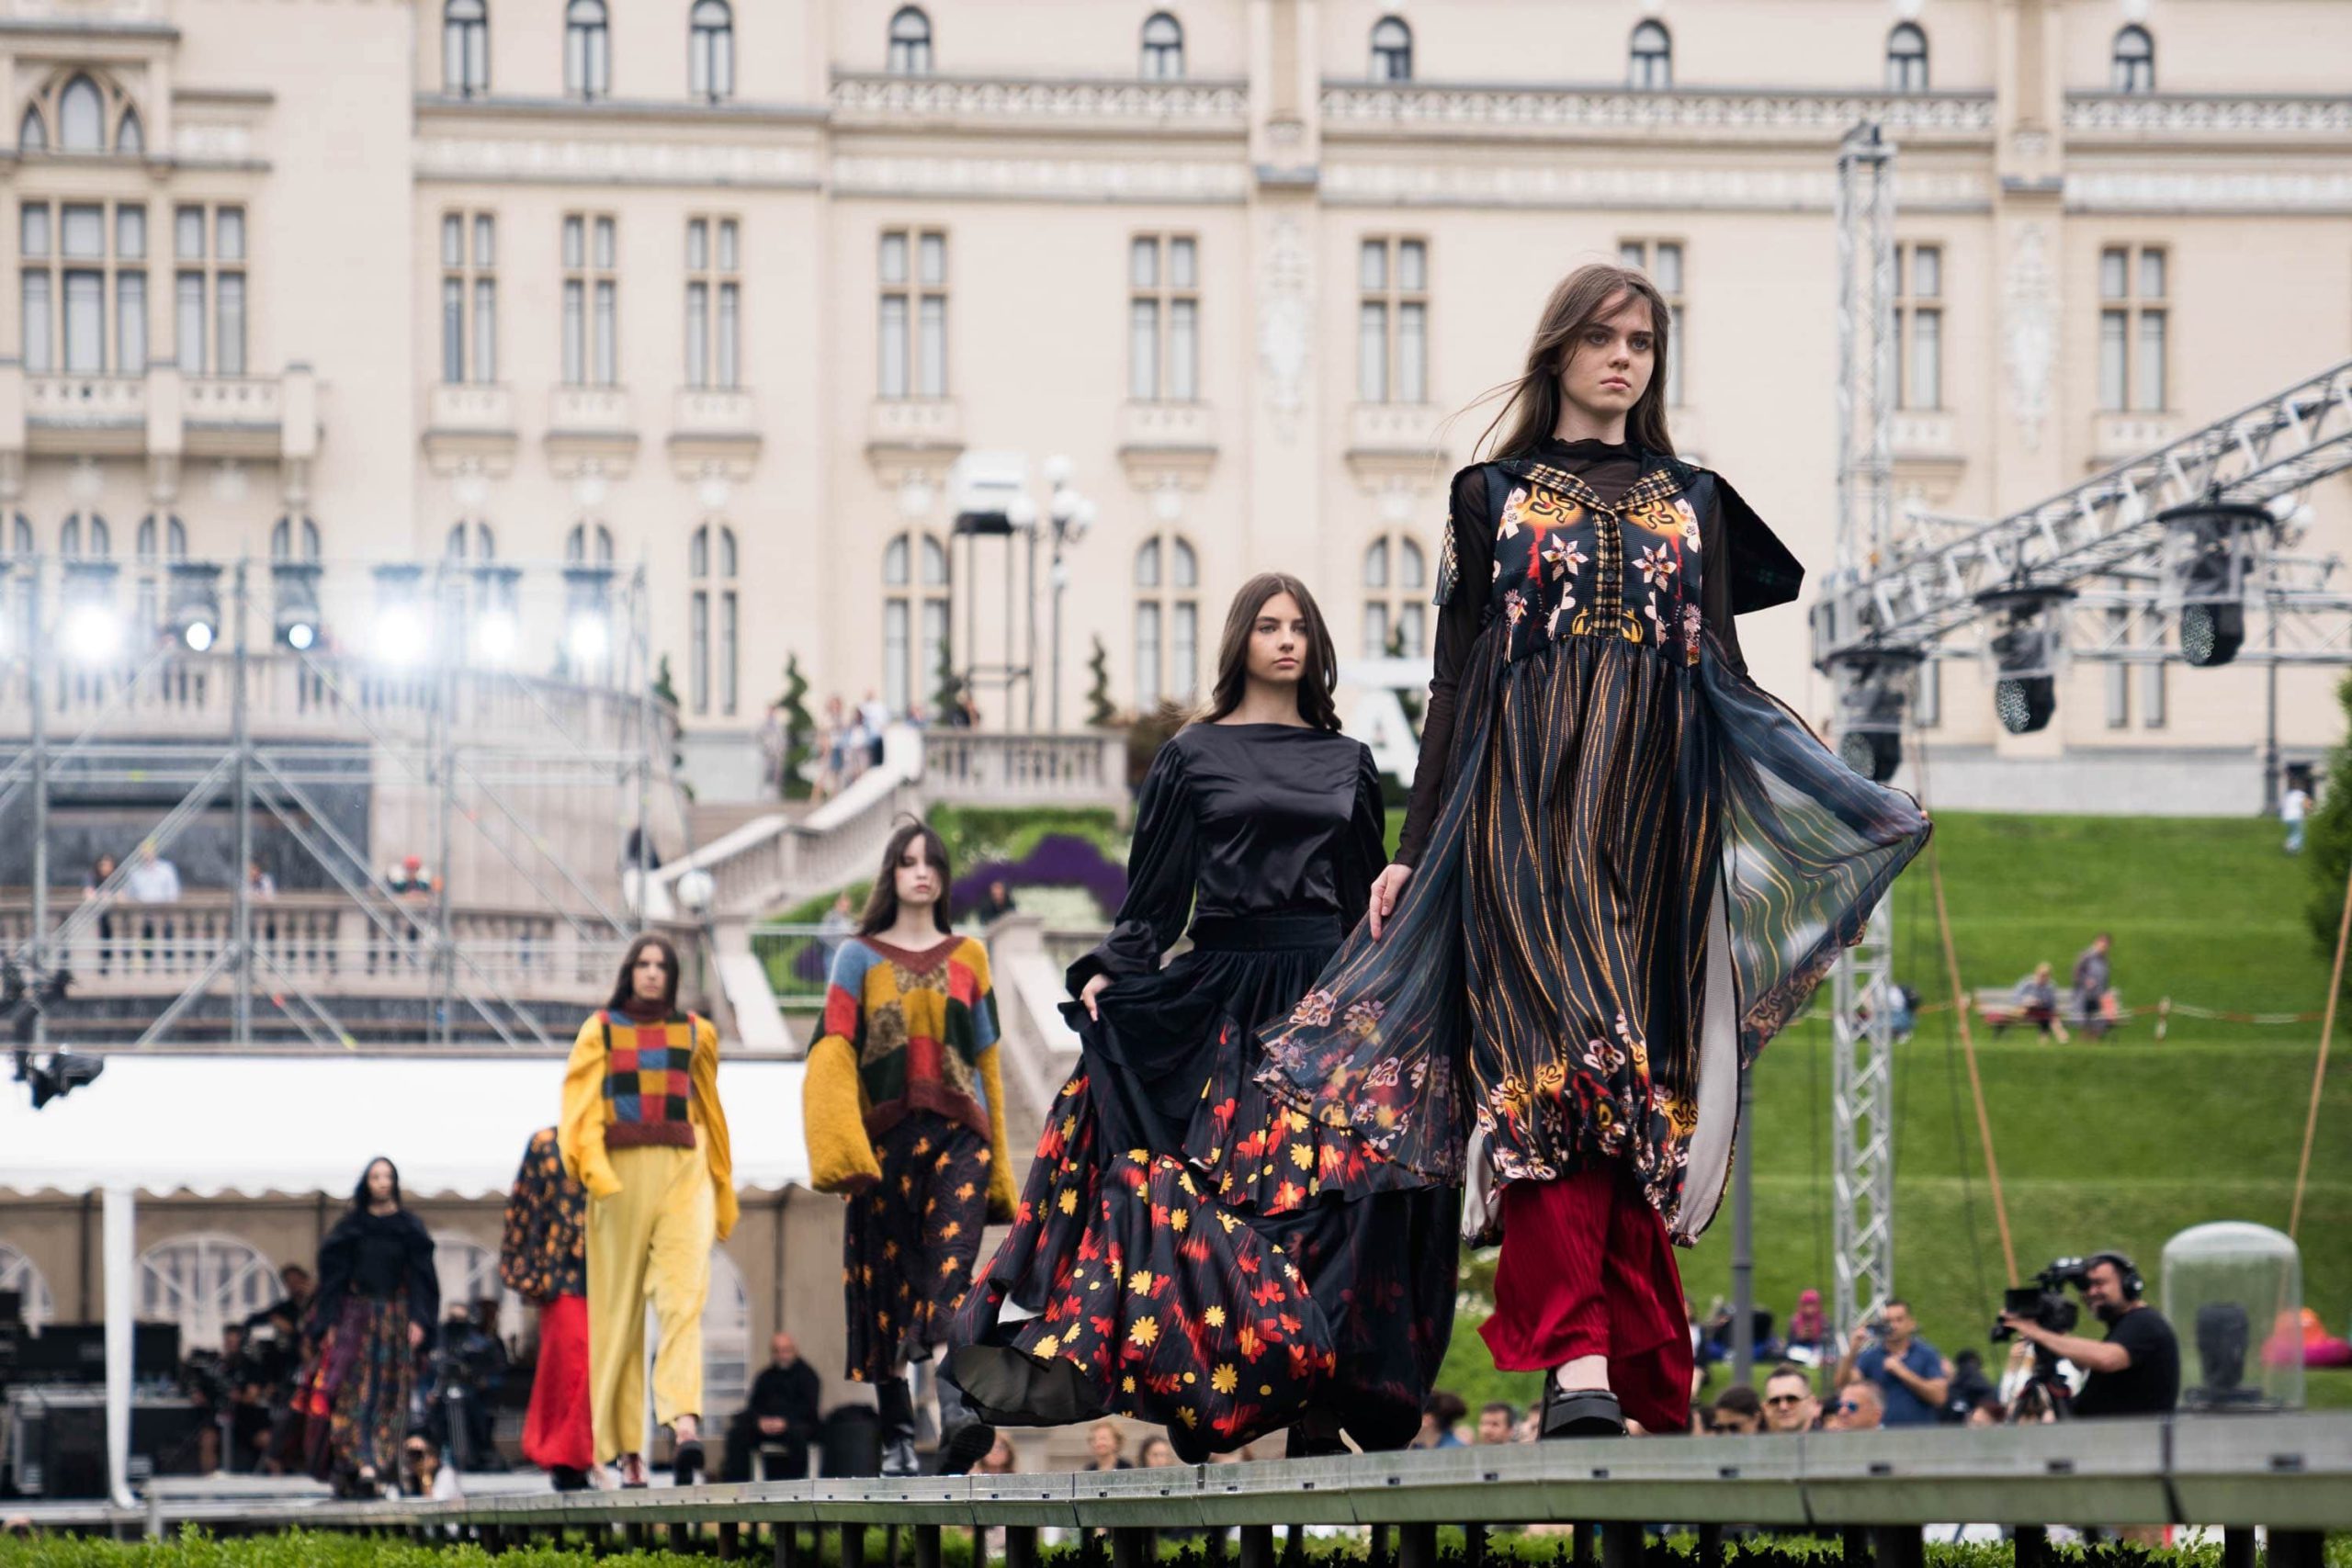  Zeci de designeri, 50 de show-uri de modă, cel mai spectaculos catwalk din țară, expoziții, artiști internaționali și o premieră, la Romanian Fashion Week. Evenimentele vor avea loc în parcul Palas.